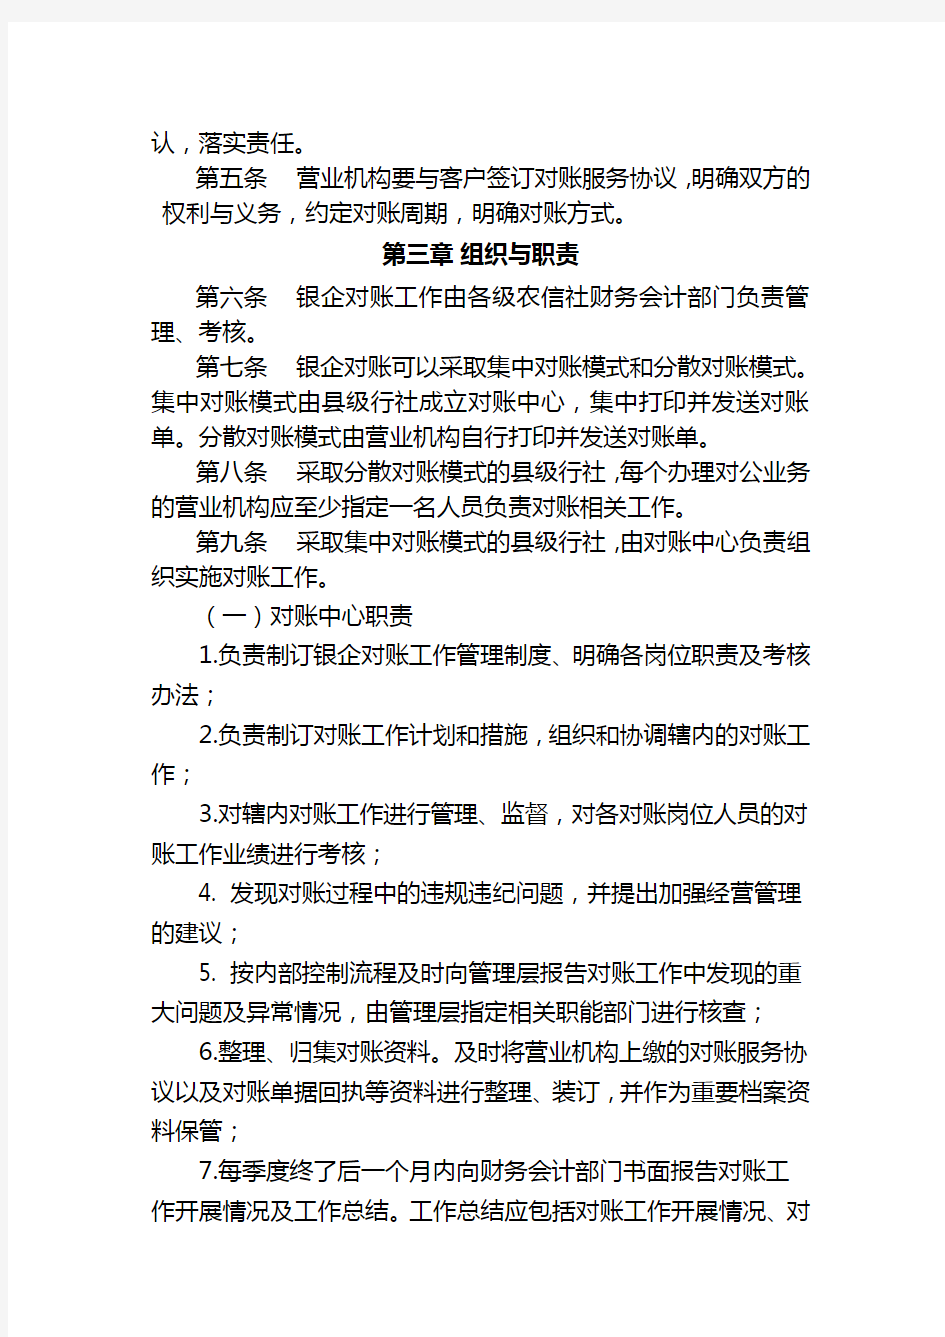 10.20河南省农村信用社银企对账管理办法(试行)